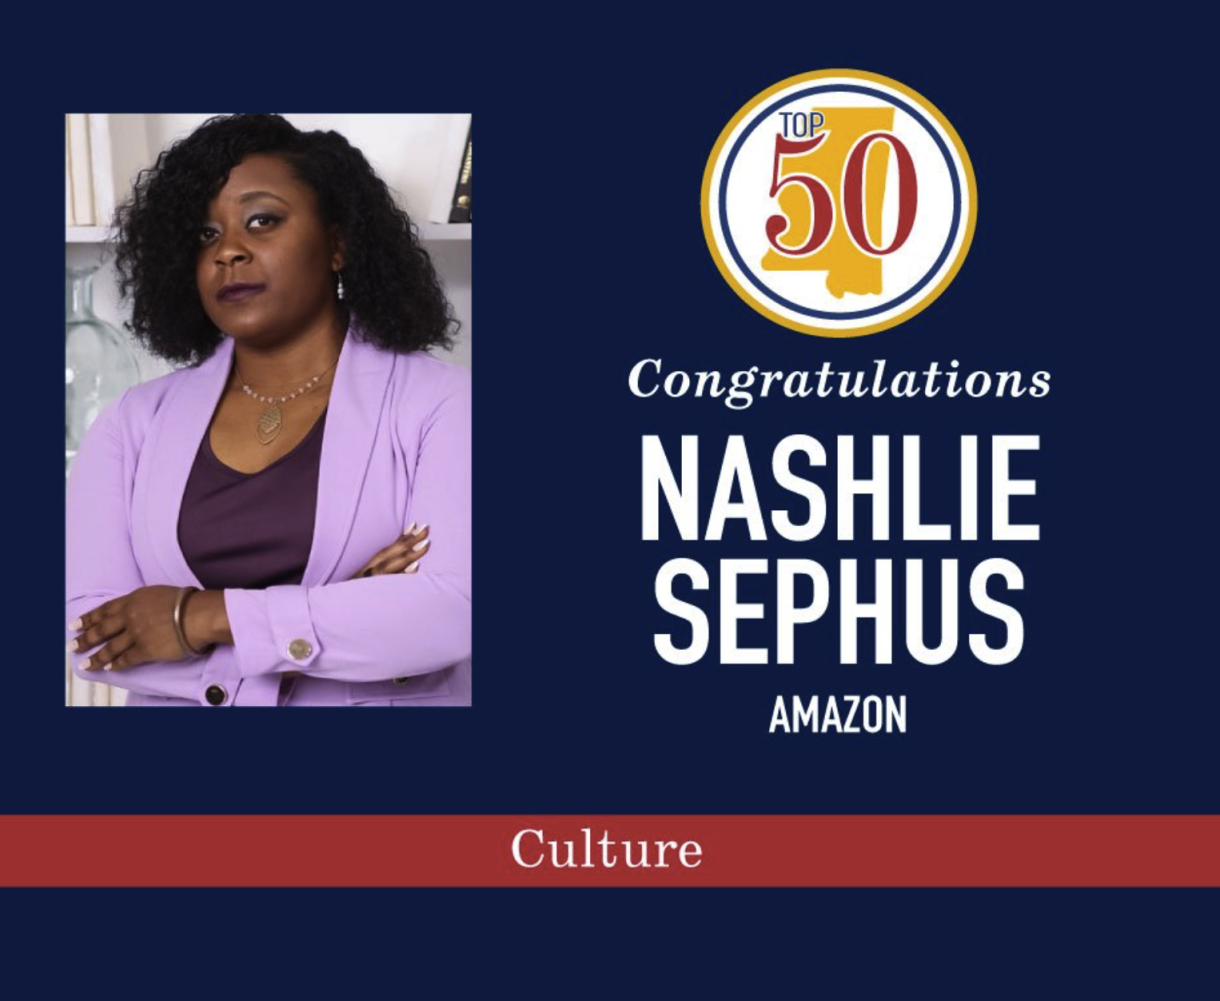 Dr. Nashlie Sephus. Photo credit: Mississippi Top 5